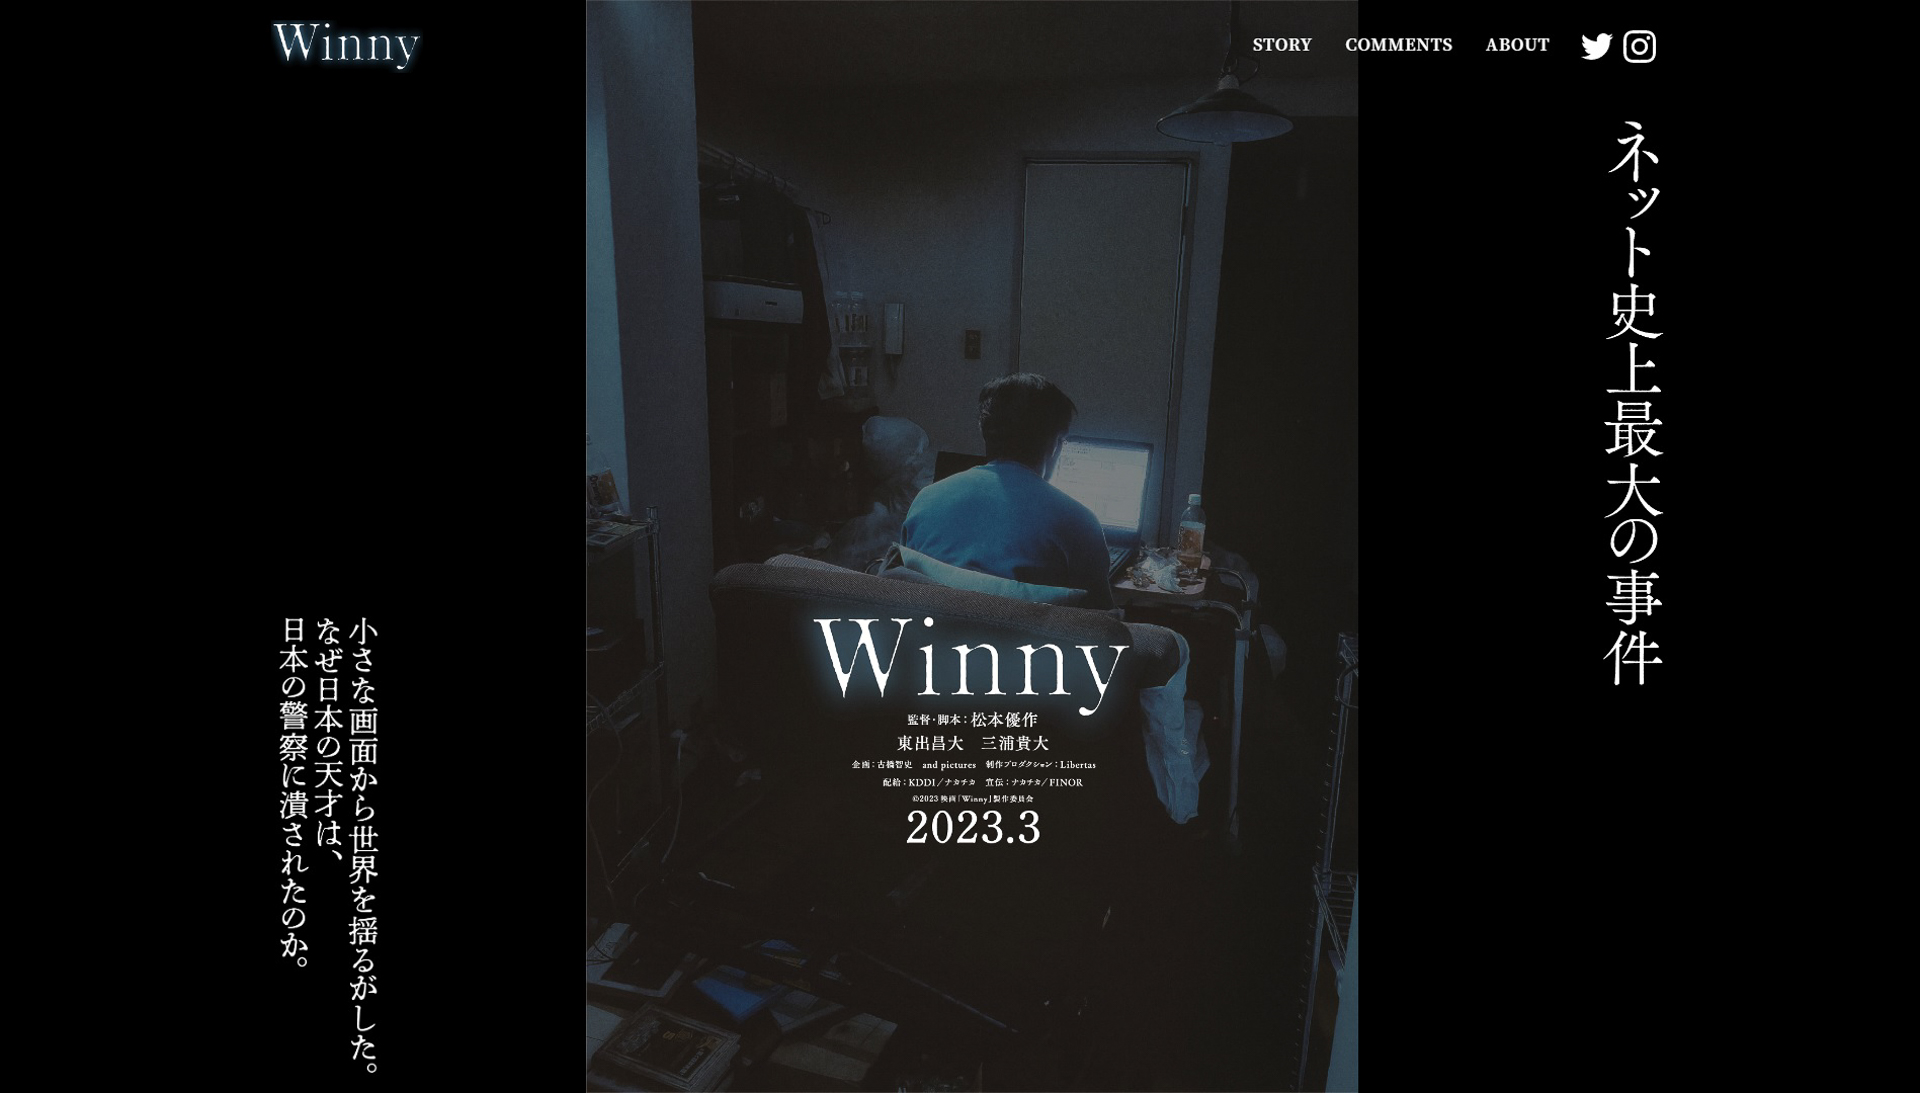 映画「Winny」が2023年3月公開、金子勇氏の逮捕・裁判の奮闘を描いた